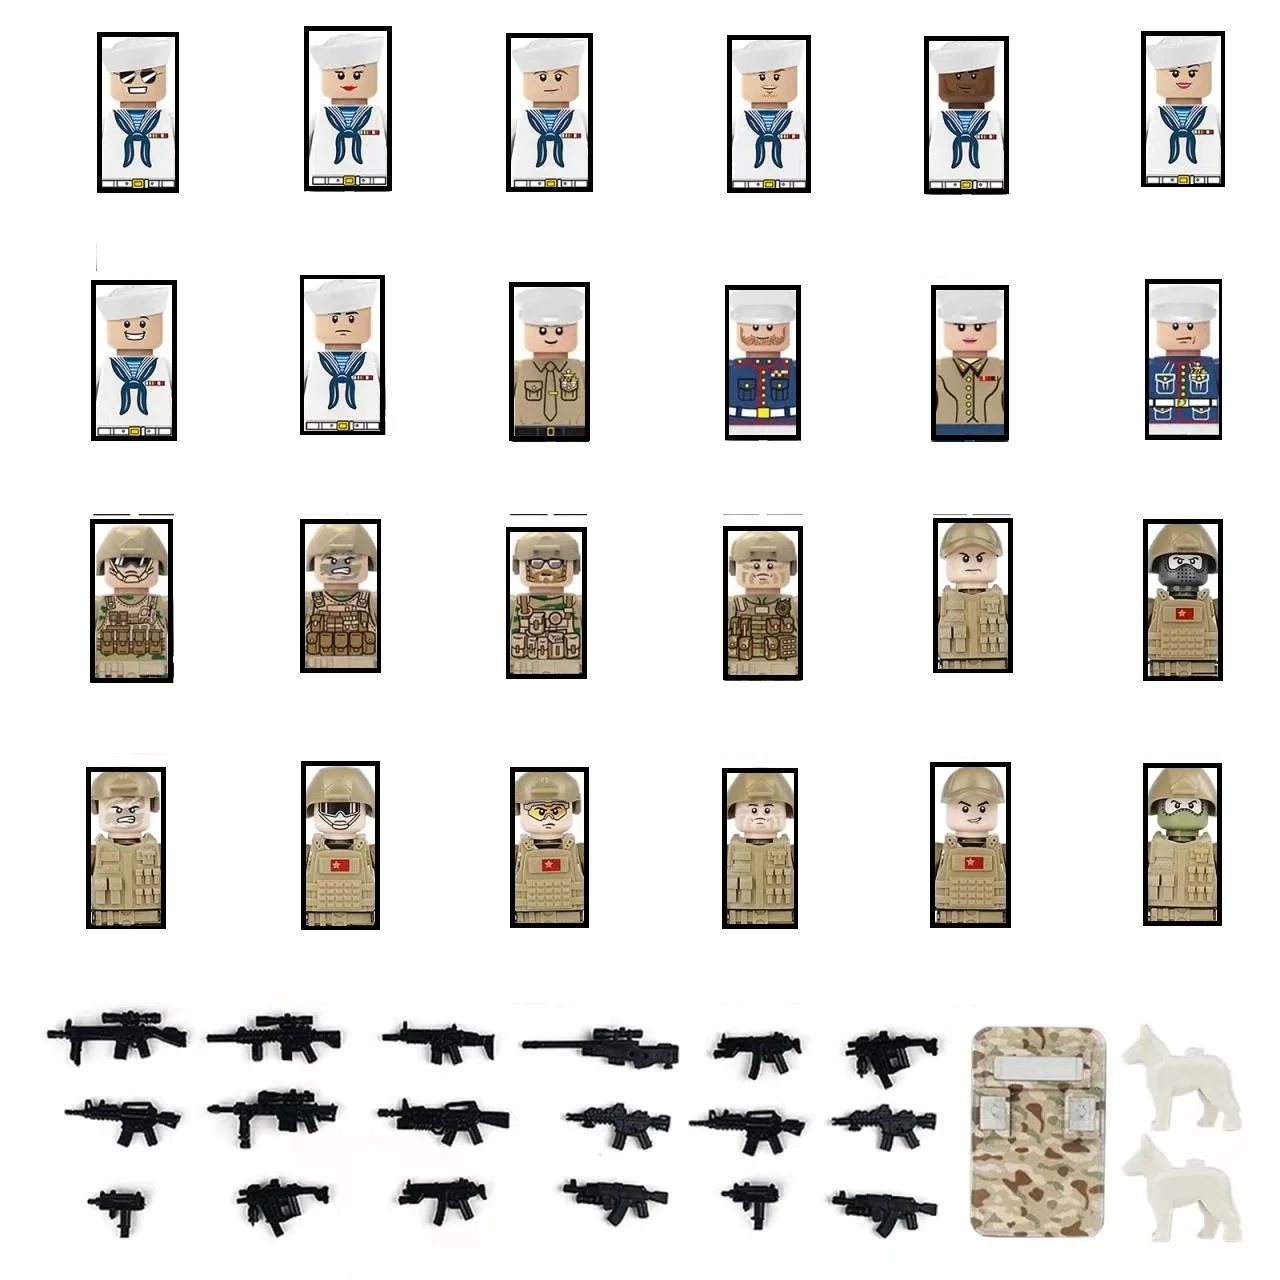 Городские мини-фигурки, Военные солдаты спецназа, Военные солдаты, оружие, MOC, военные строительные блоки, набор кирпичей, игрушки для детей